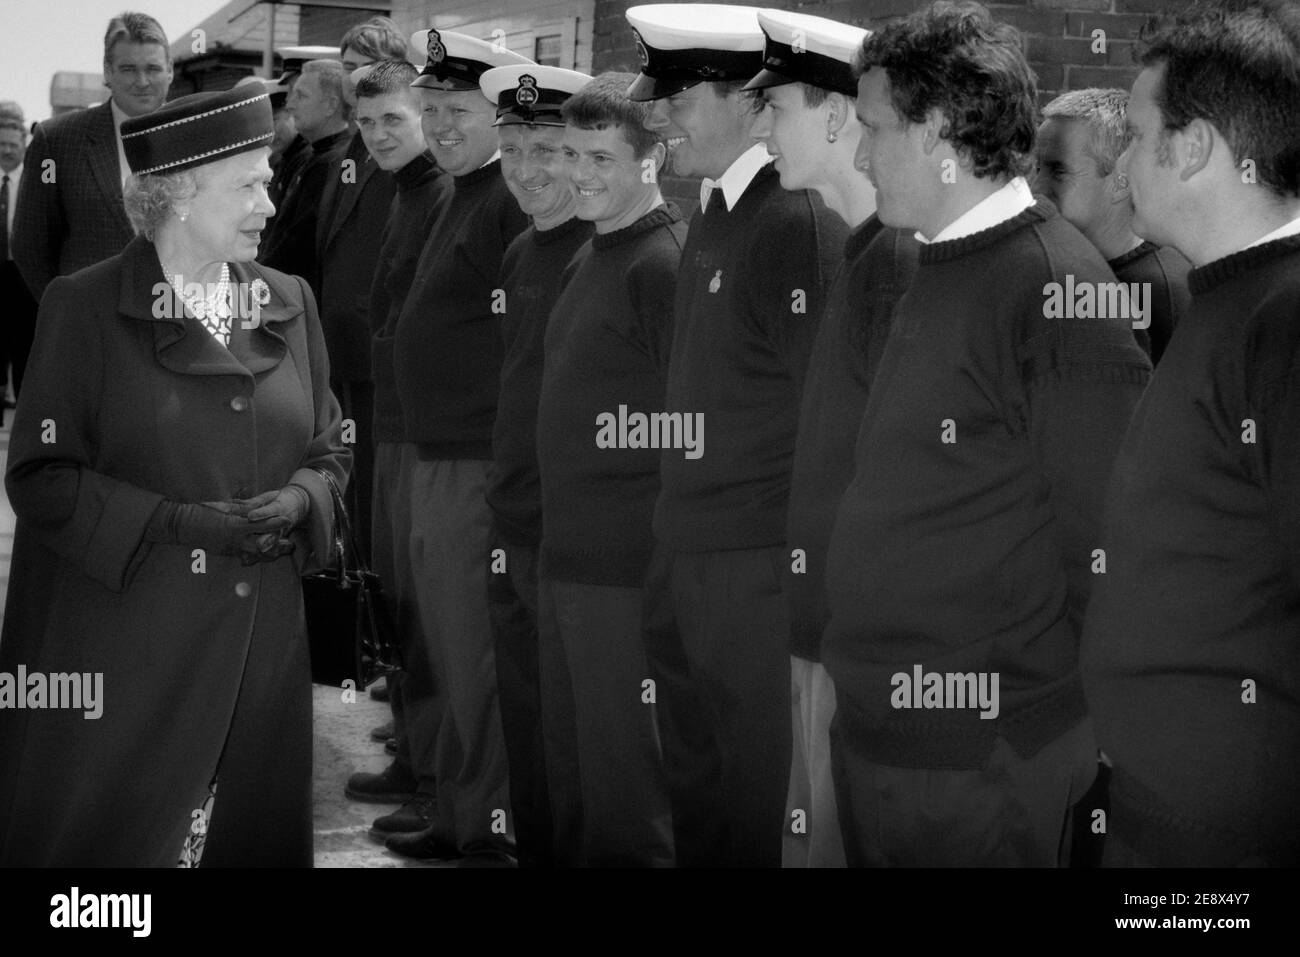 Königin Elizabeth II. Im Gespräch mit Mitgliedern der RNLI-Rettungsschwimmer bei einem Besuch in der Altstadt von Hastings, East Sussex, England, Großbritannien. 6. Juni 1997 Stockfoto